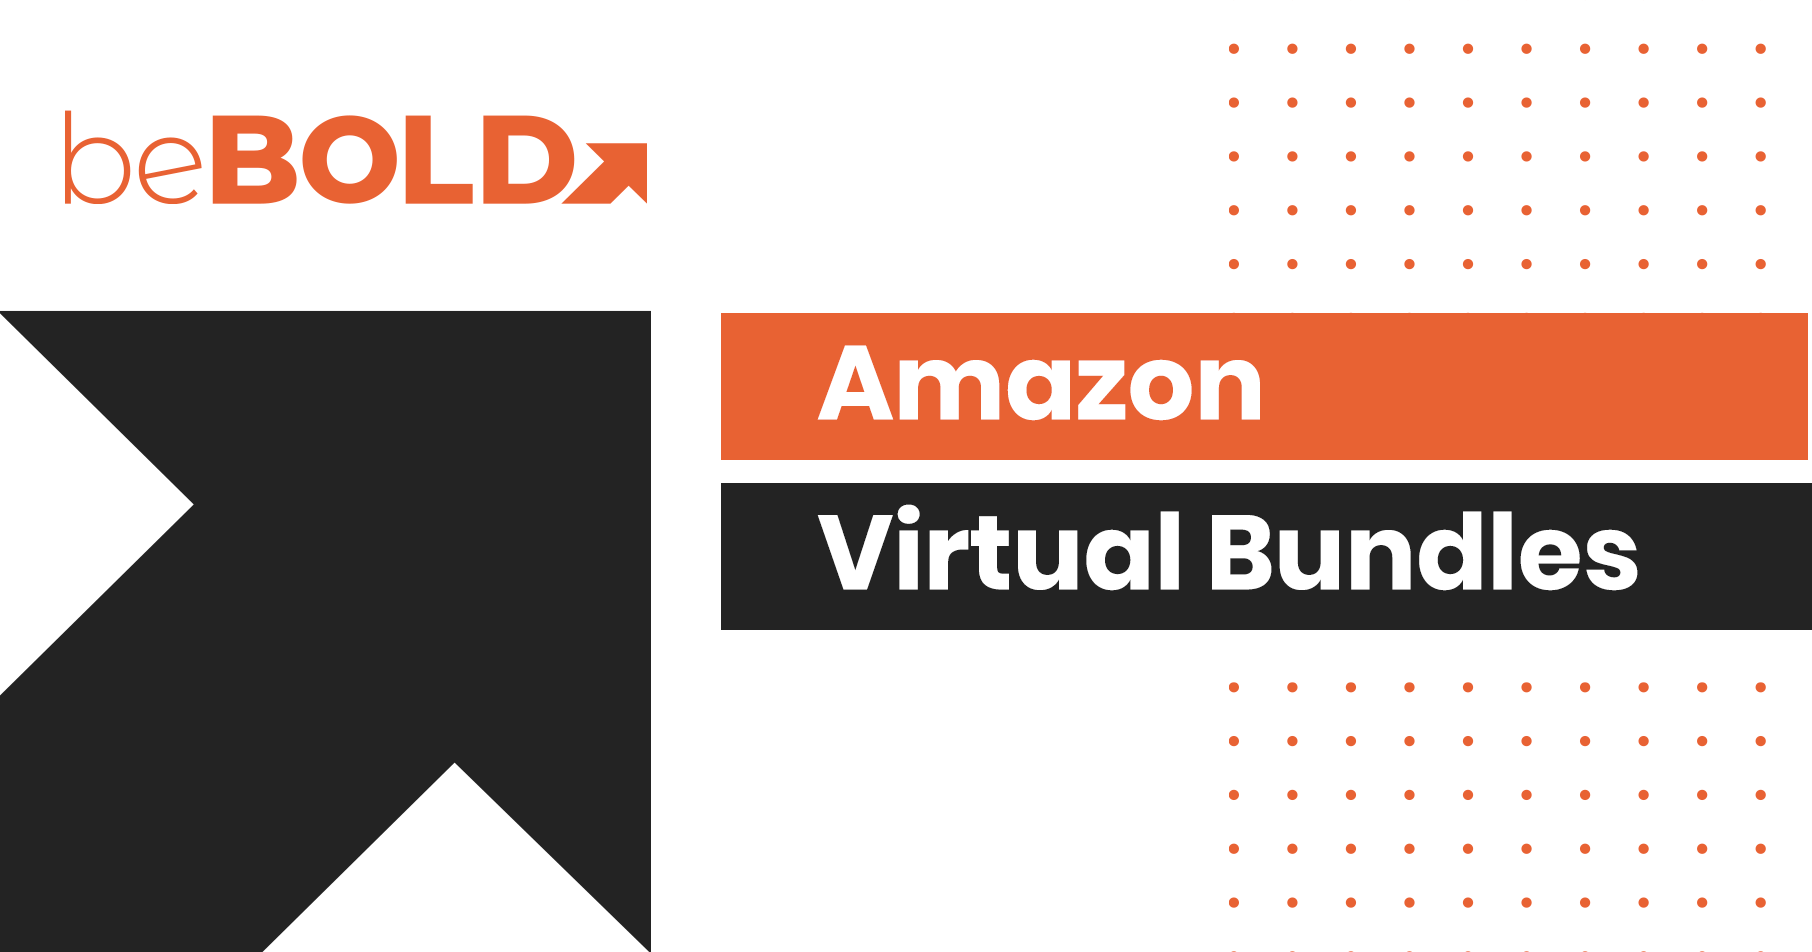 Amazon Virtual Bundles